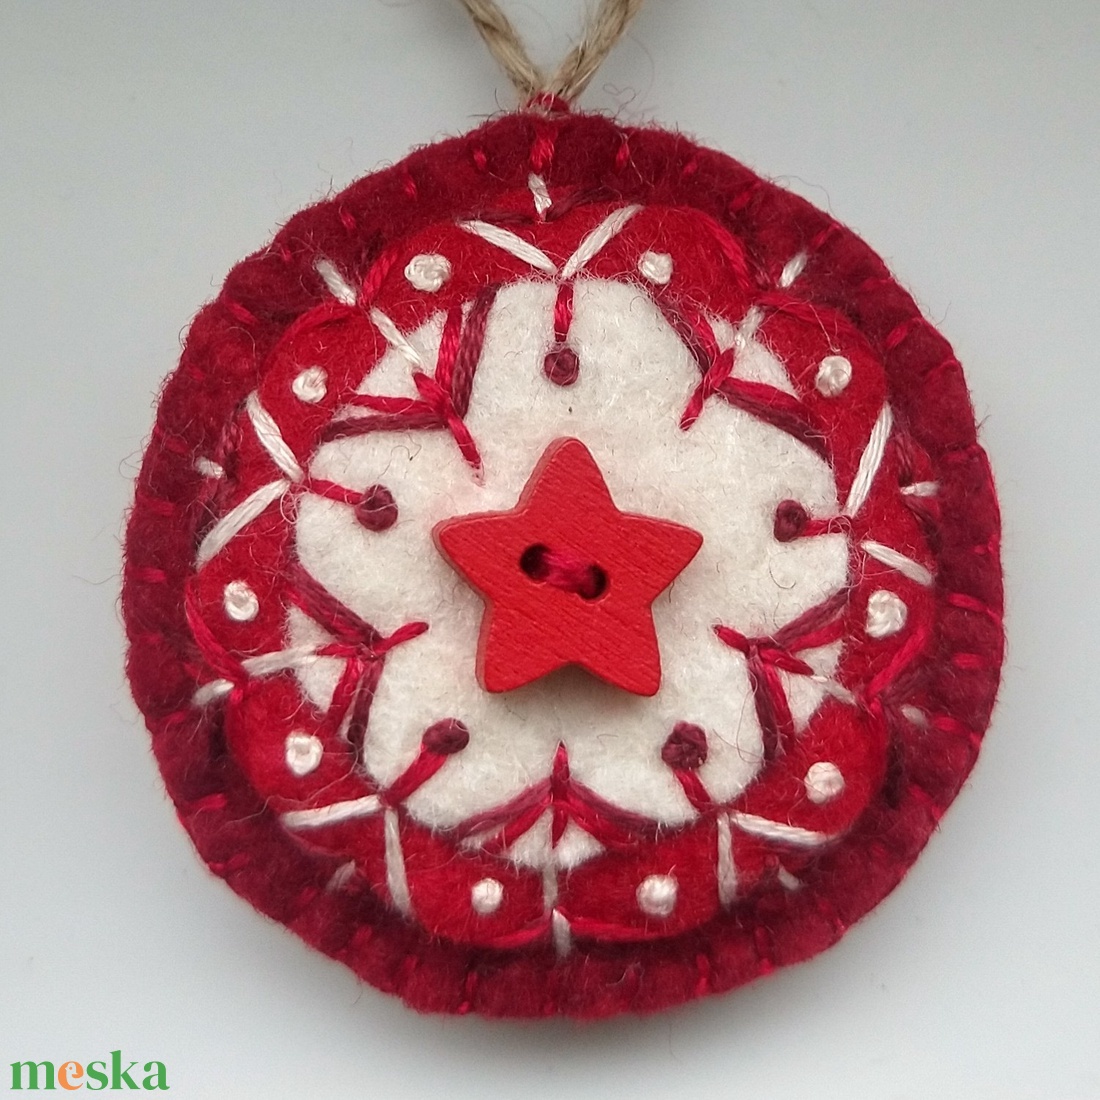 Piros csillag mandala - hímzett gyapjúfilc karácsonyfadísz, ajándék kísérő, kulcstartó, táska dísz - karácsony - karácsonyi lakásdekoráció - karácsonyfadíszek - Meska.hu